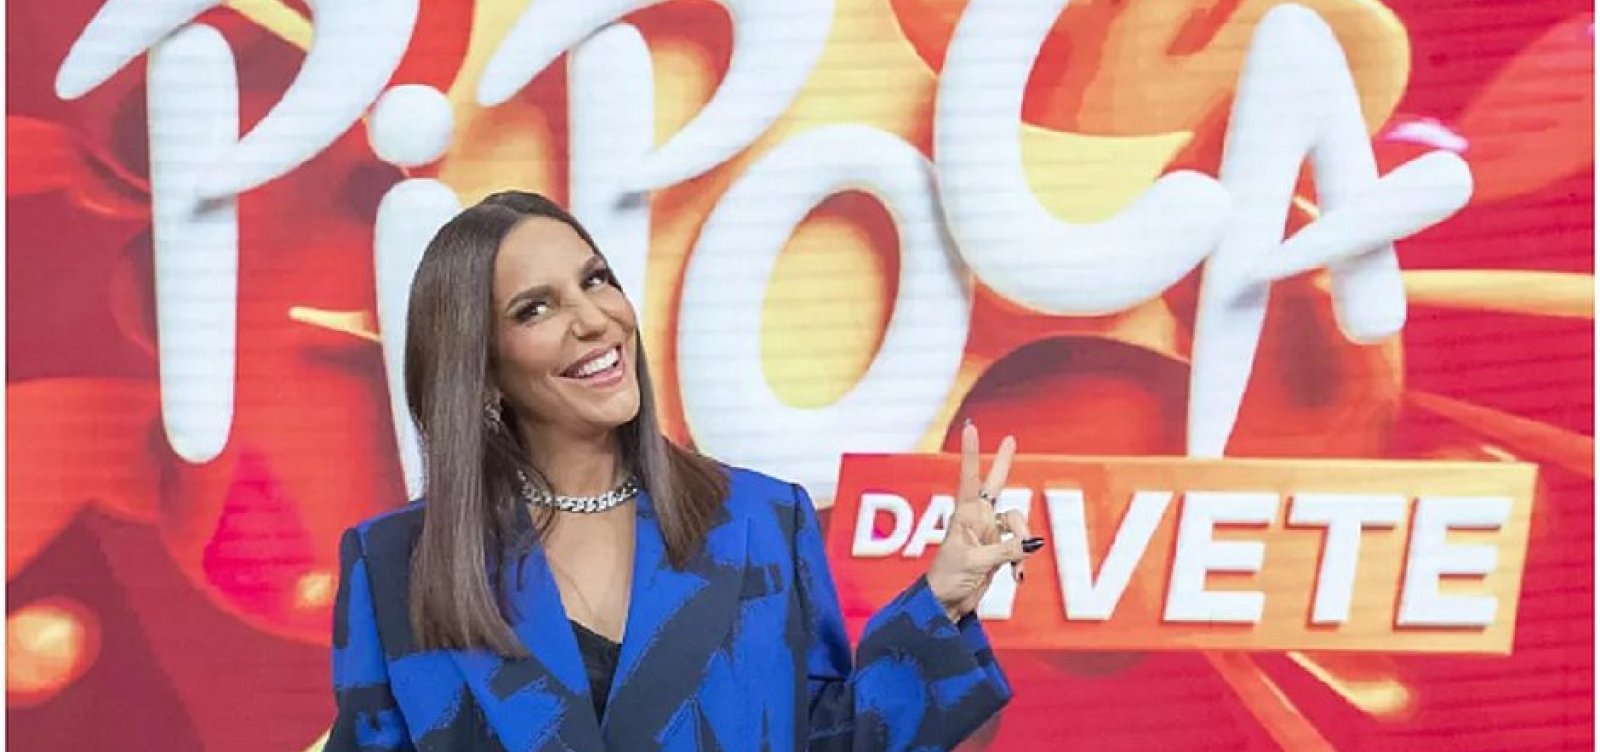 Com convidados famosos, Ivete Sangalo estreia novo programa na Globo 